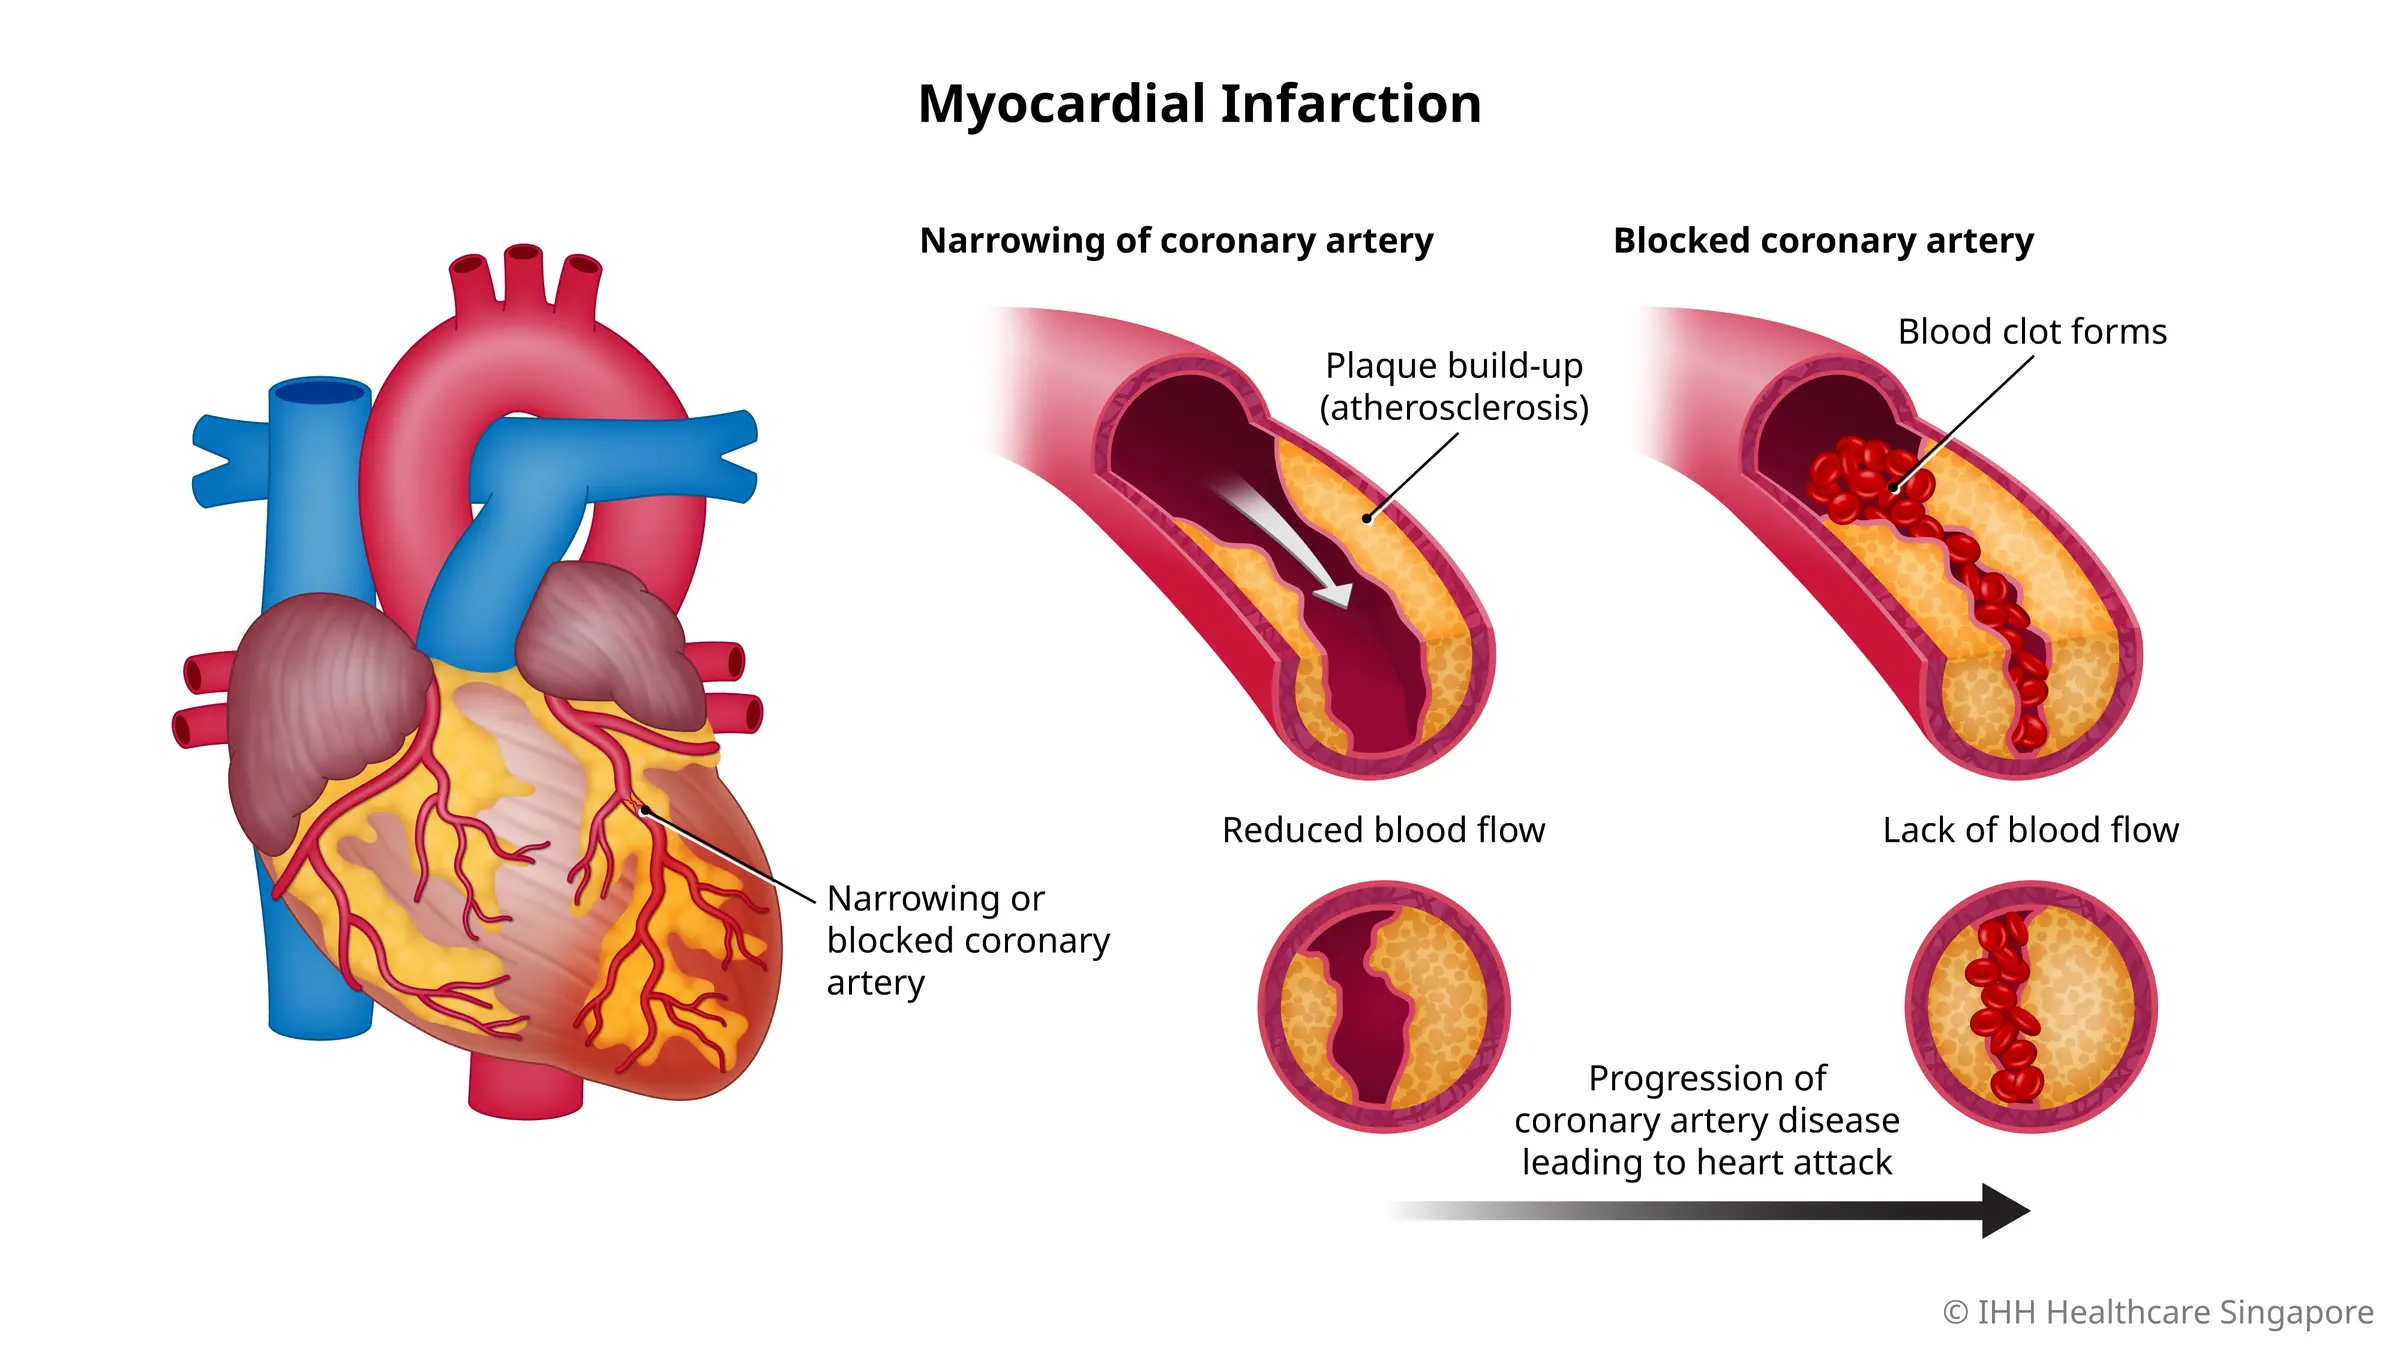 当动脉粥样硬化导致流向心脏的血流严重减少或受阻时，就会发生心肌梗塞。